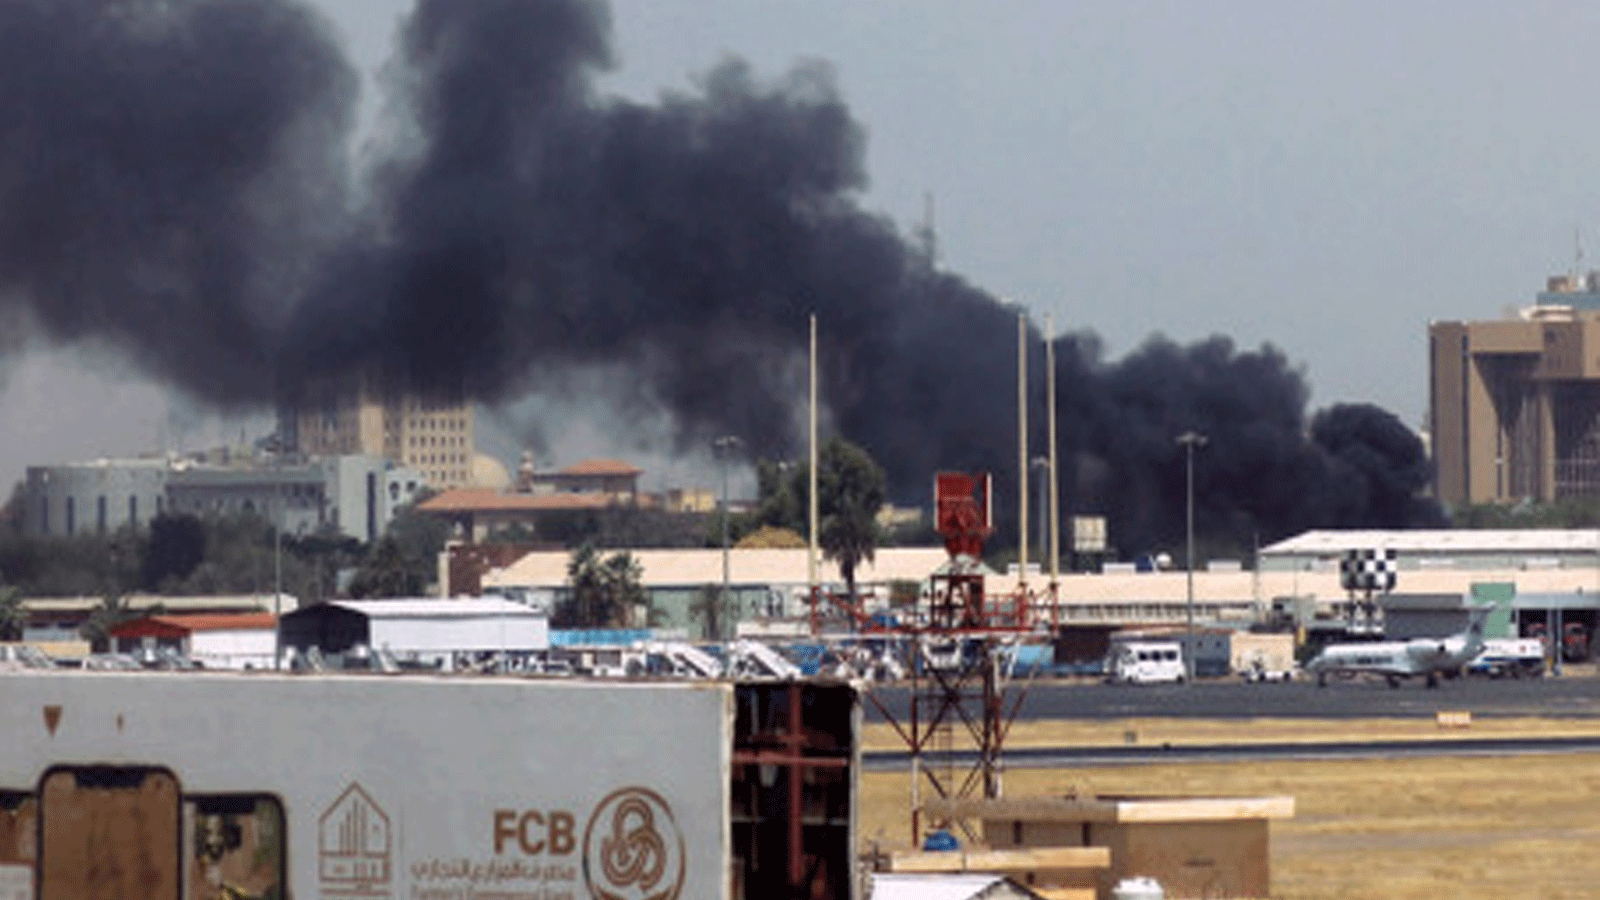 دخان كثيف فوق المباني المجاورة لمطار الخرطوم وسط اشتباكات في العاصمة السودانية